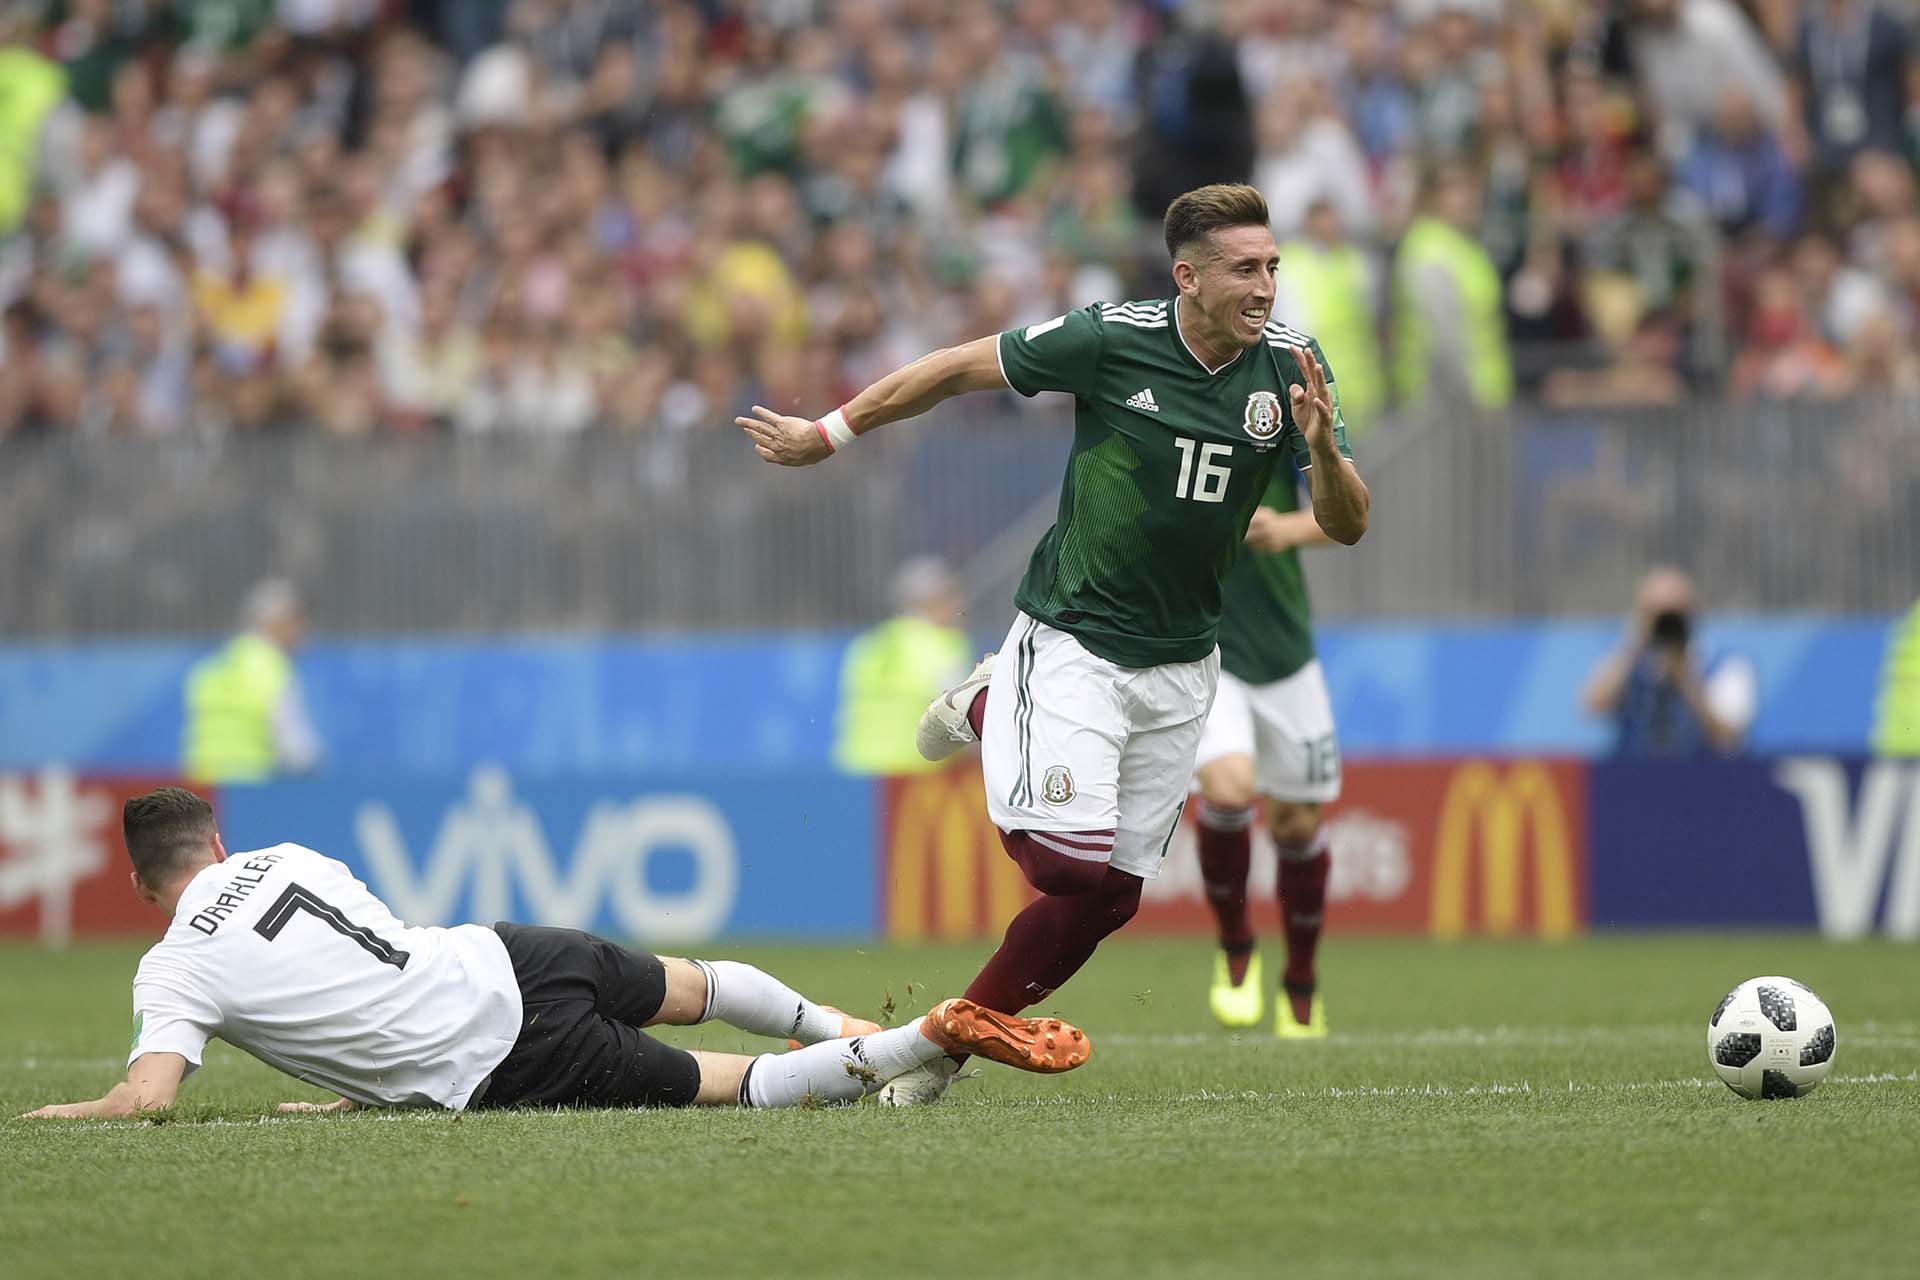 Bromas, gritos y futbolistas levantados en hombros: Héctor Herrera reveló detalles del festejo de la selección mexicana al vencer a Alemania en Rusia 2018